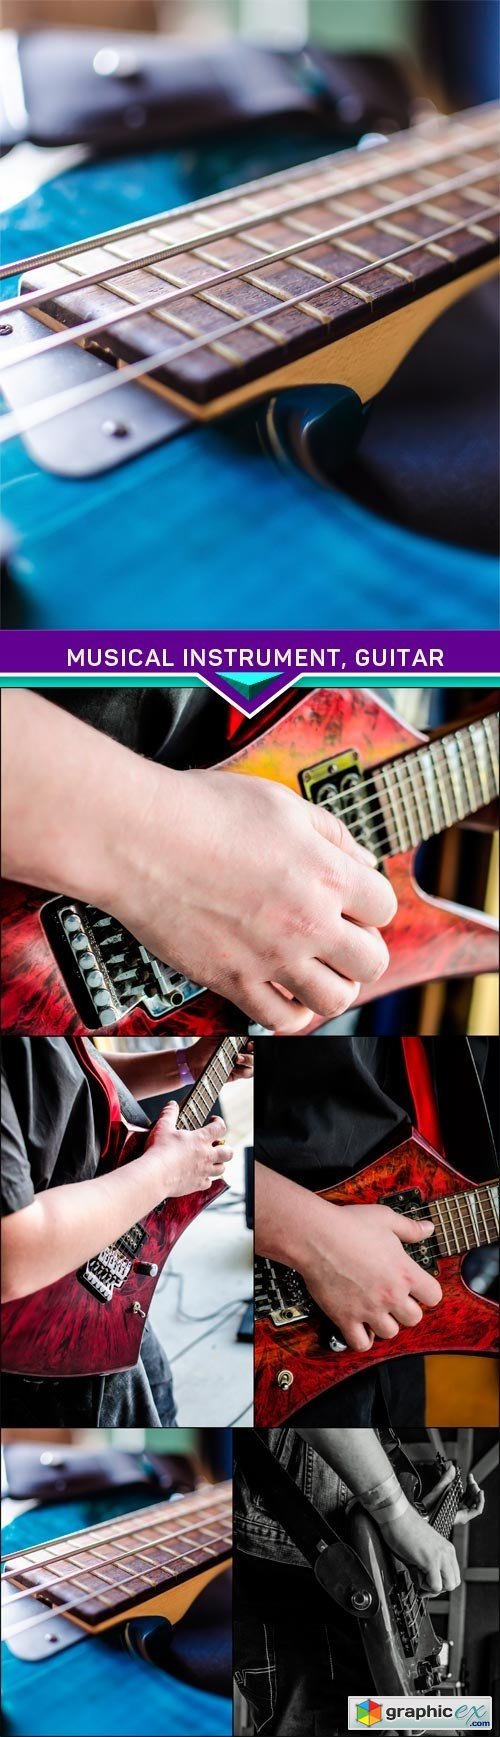 Musical instrument, guitar 5x JPEG